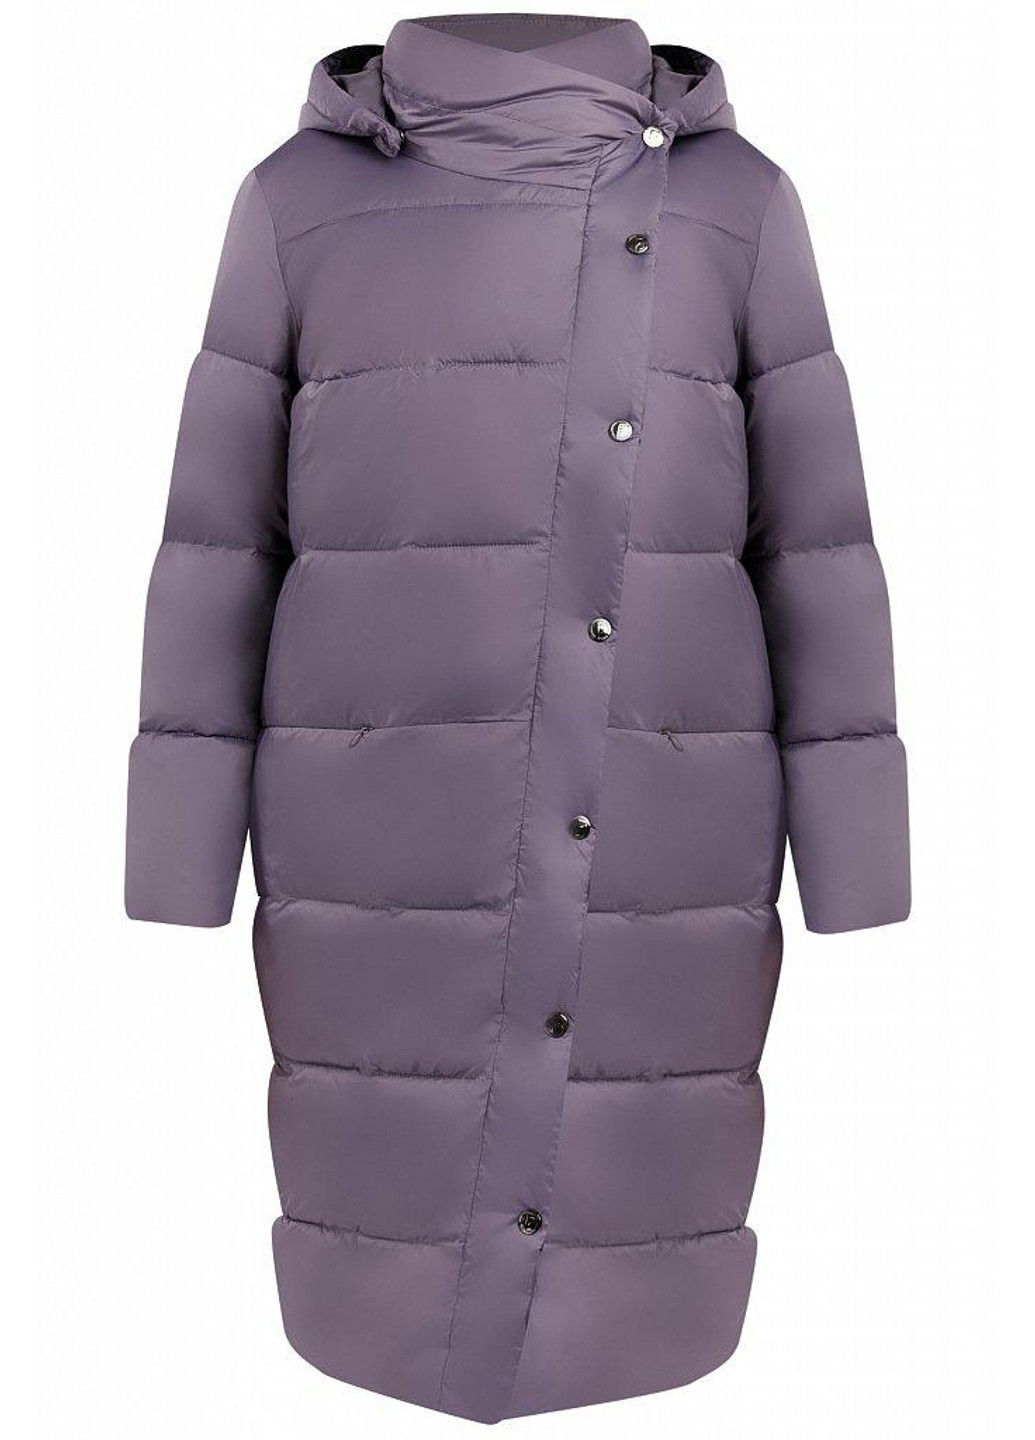 Сиреневая зимняя зимняя куртка w19-11021-821 Finn Flare